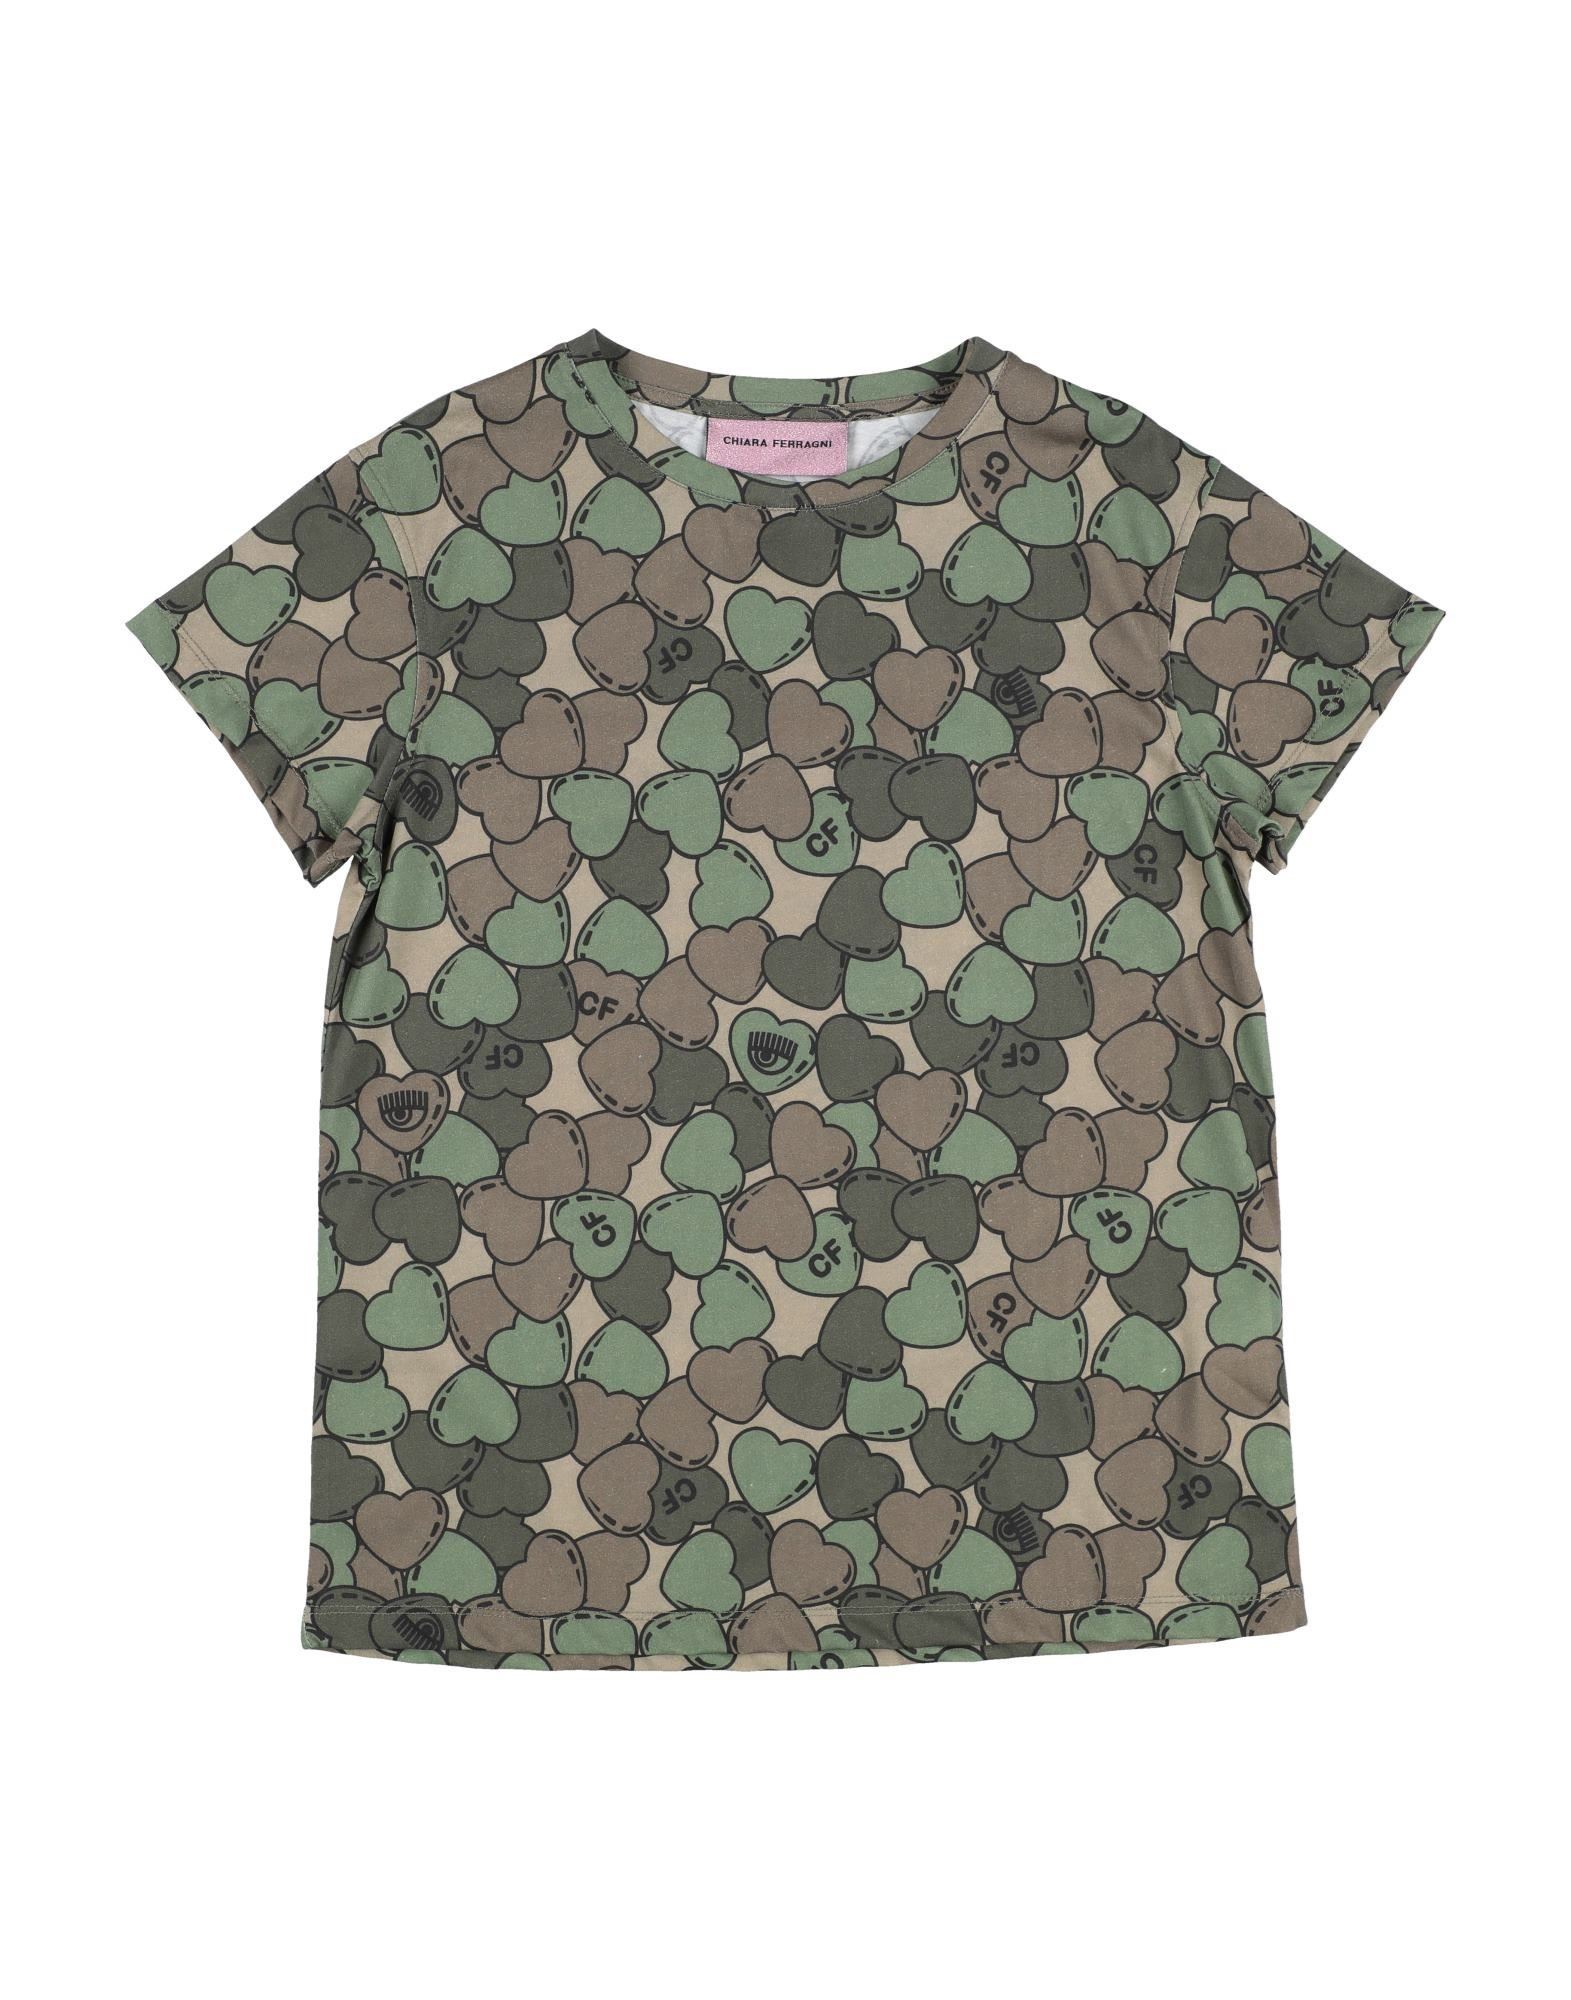 CHIARA FERRAGNI T-shirts Kinder Militärgrün von CHIARA FERRAGNI